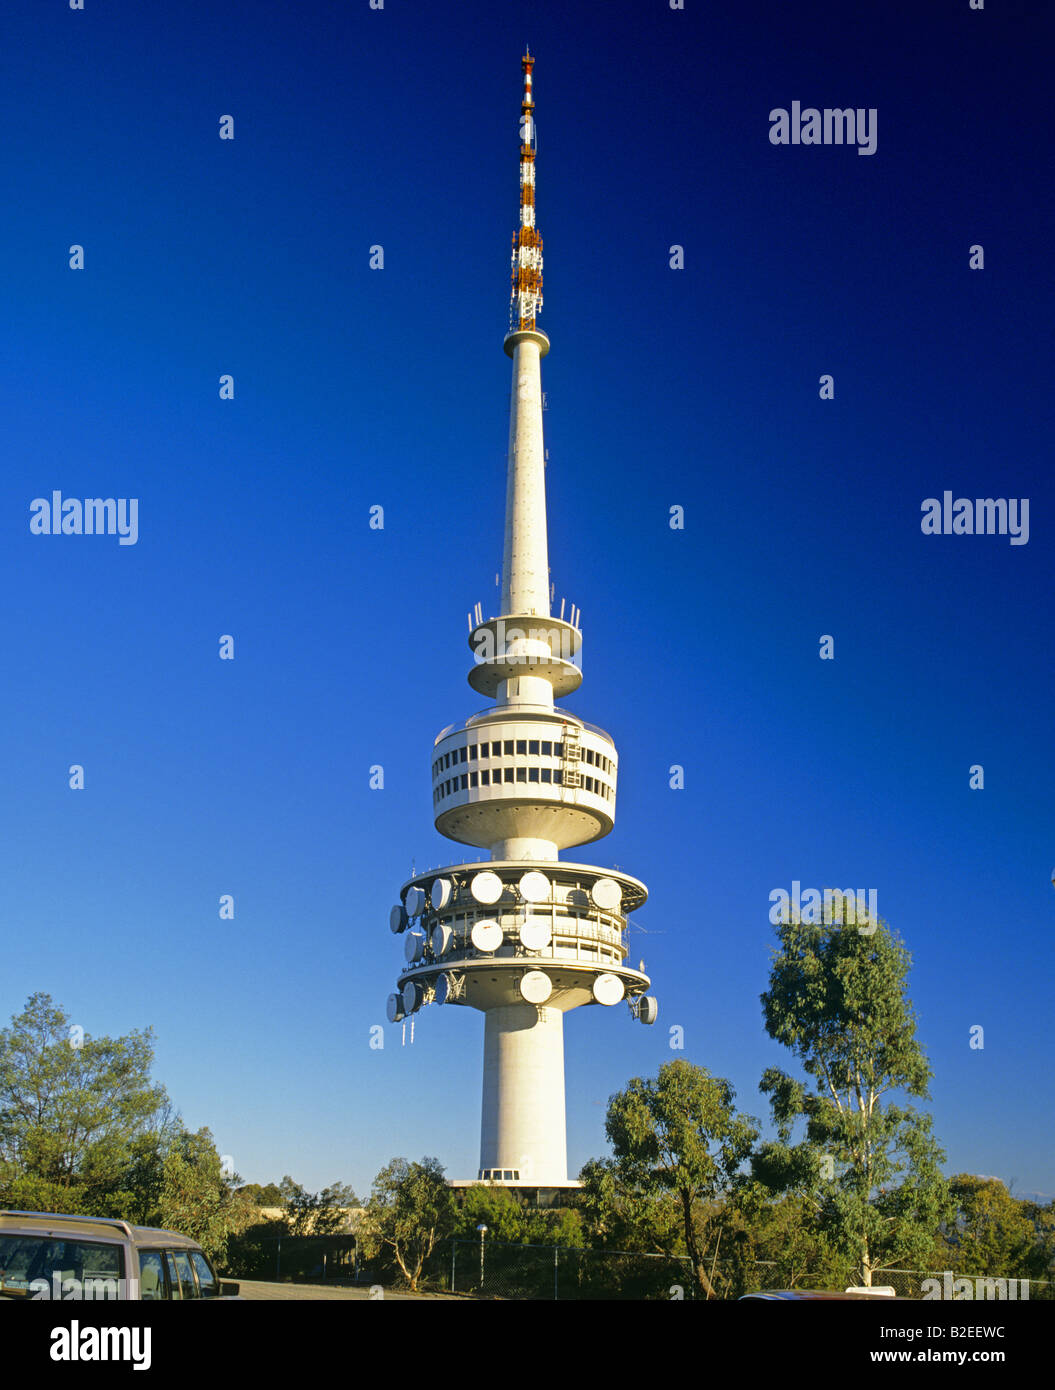 La tour Telstra Canberra Australie Banque D'Images